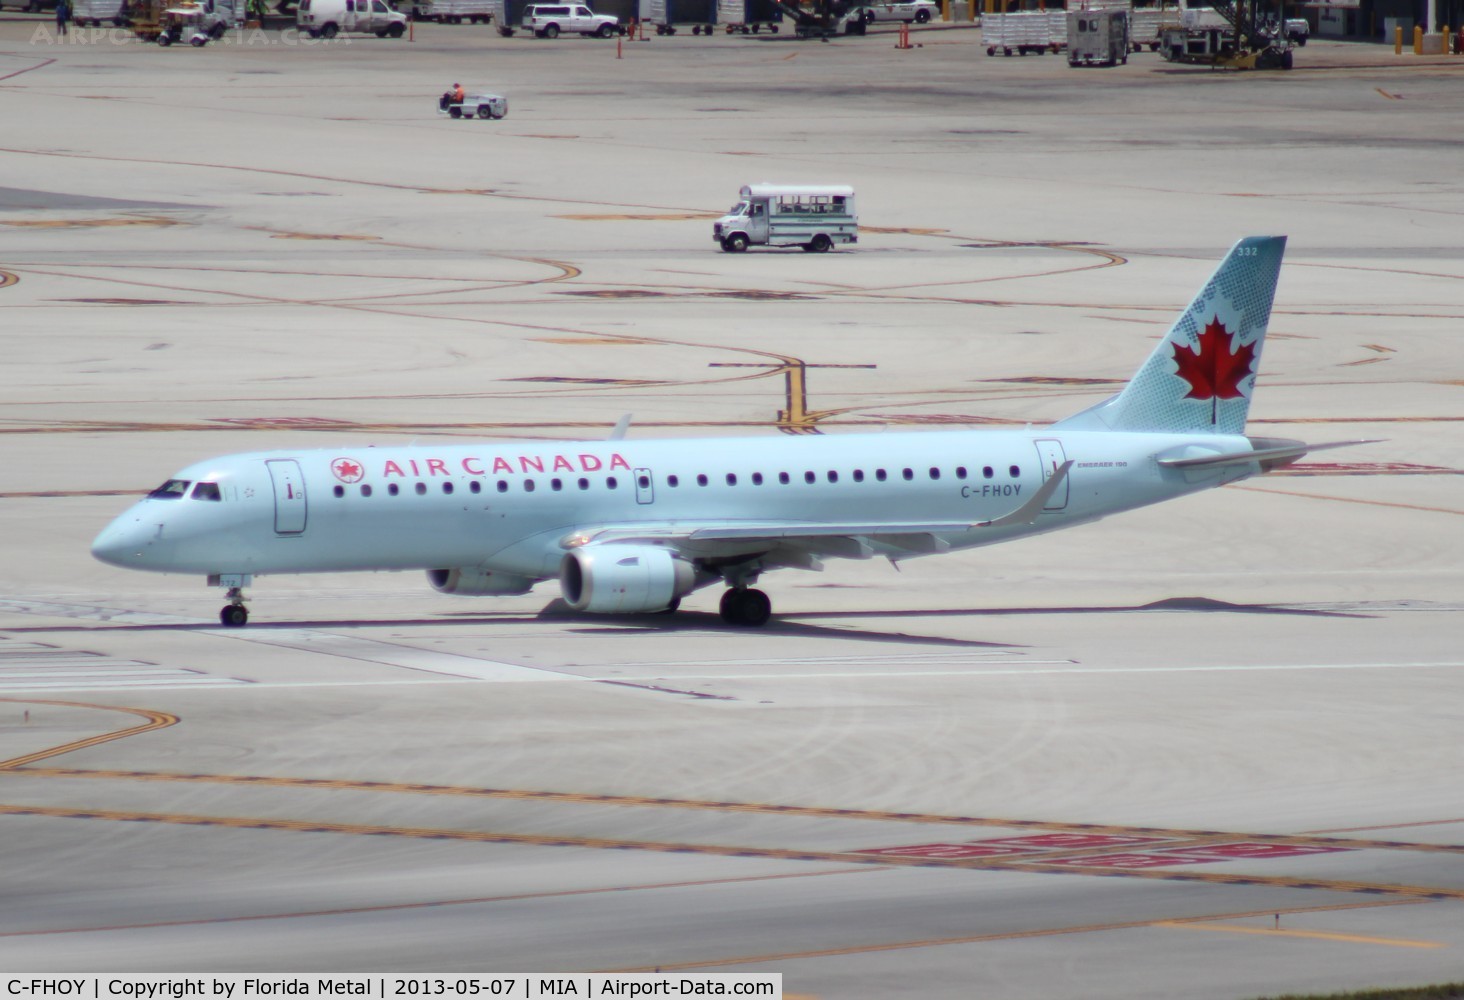 C-FHOY, 2007 Embraer 190AR (ERJ-190-100IGW) C/N 19000105, Air Canada E190